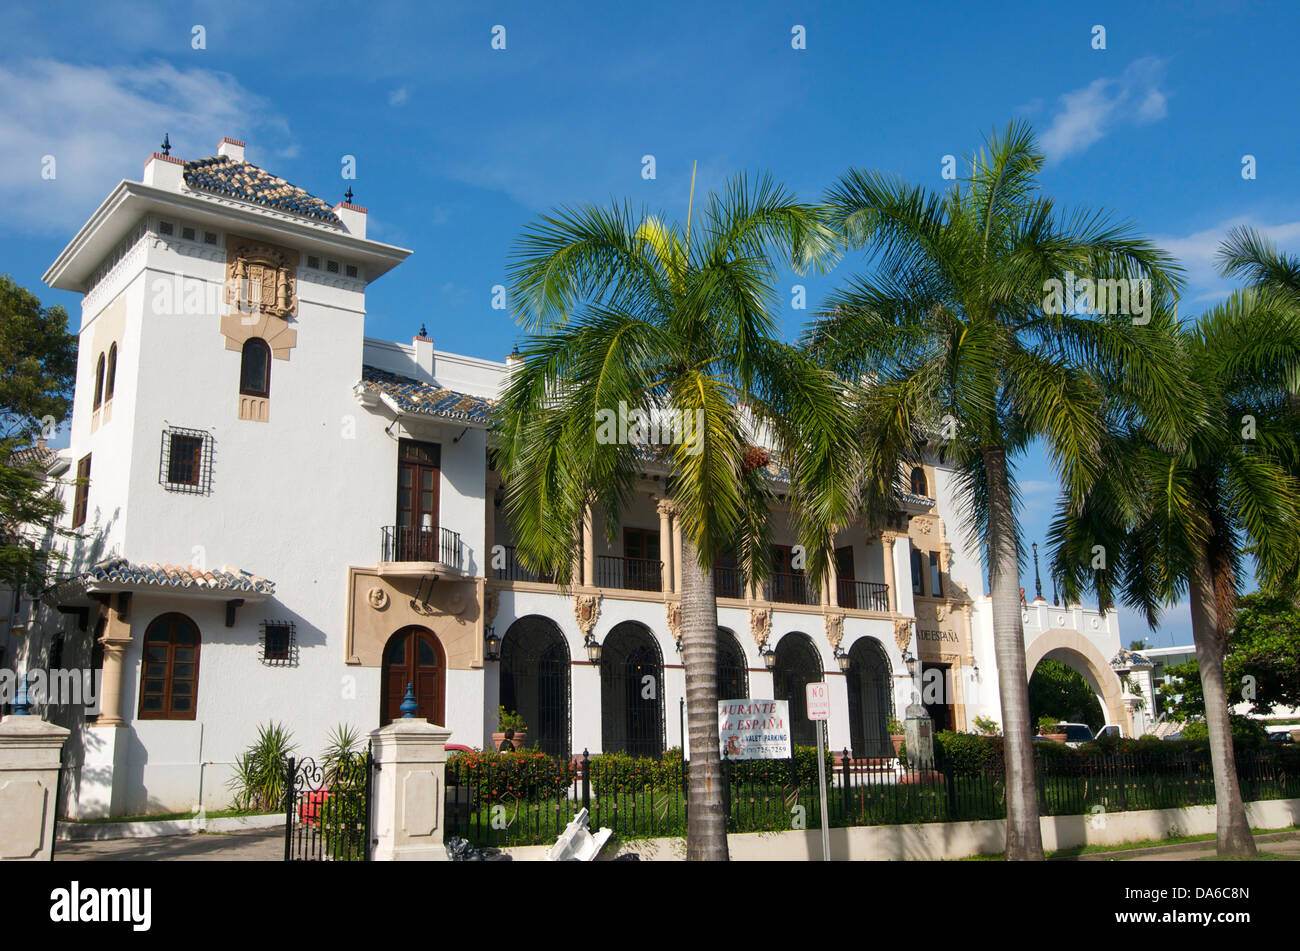 Puerto Rico, el Caribe, Antillas Mayores, Antillas, San Juan, restaurante, construcción, arquitectura, estilo colonial, Foto de stock